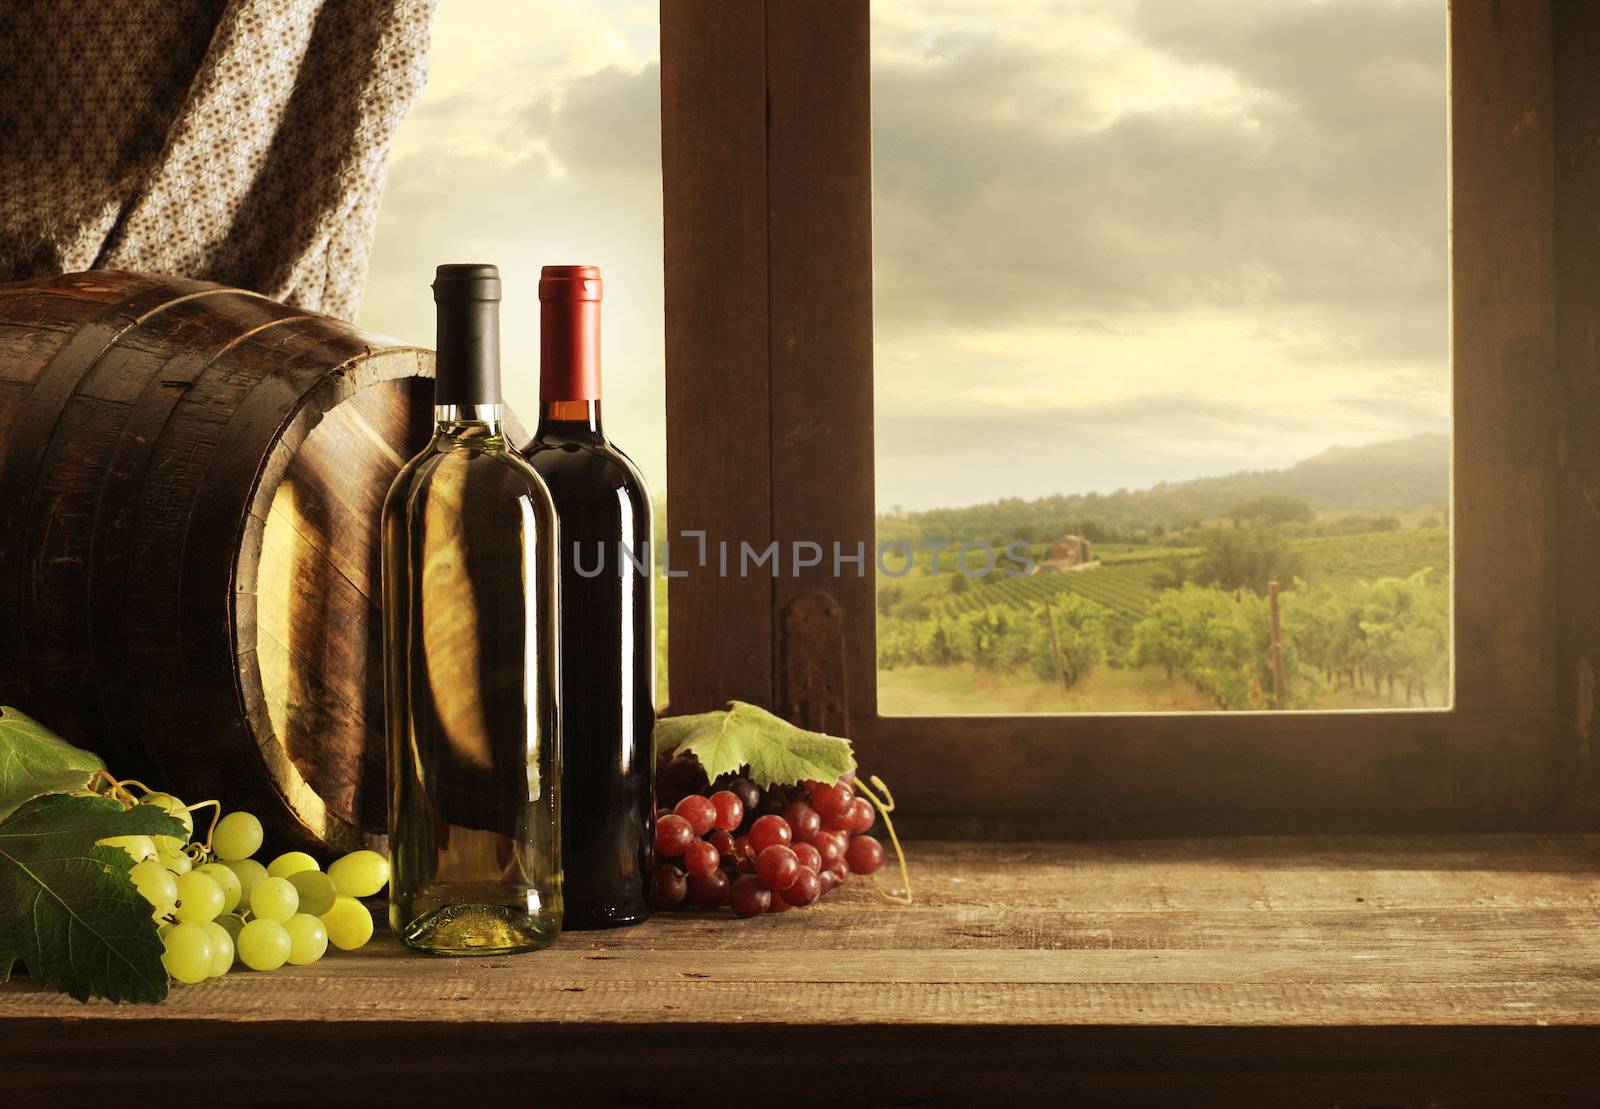 Wine bottles, barrels and vineyard in sunset